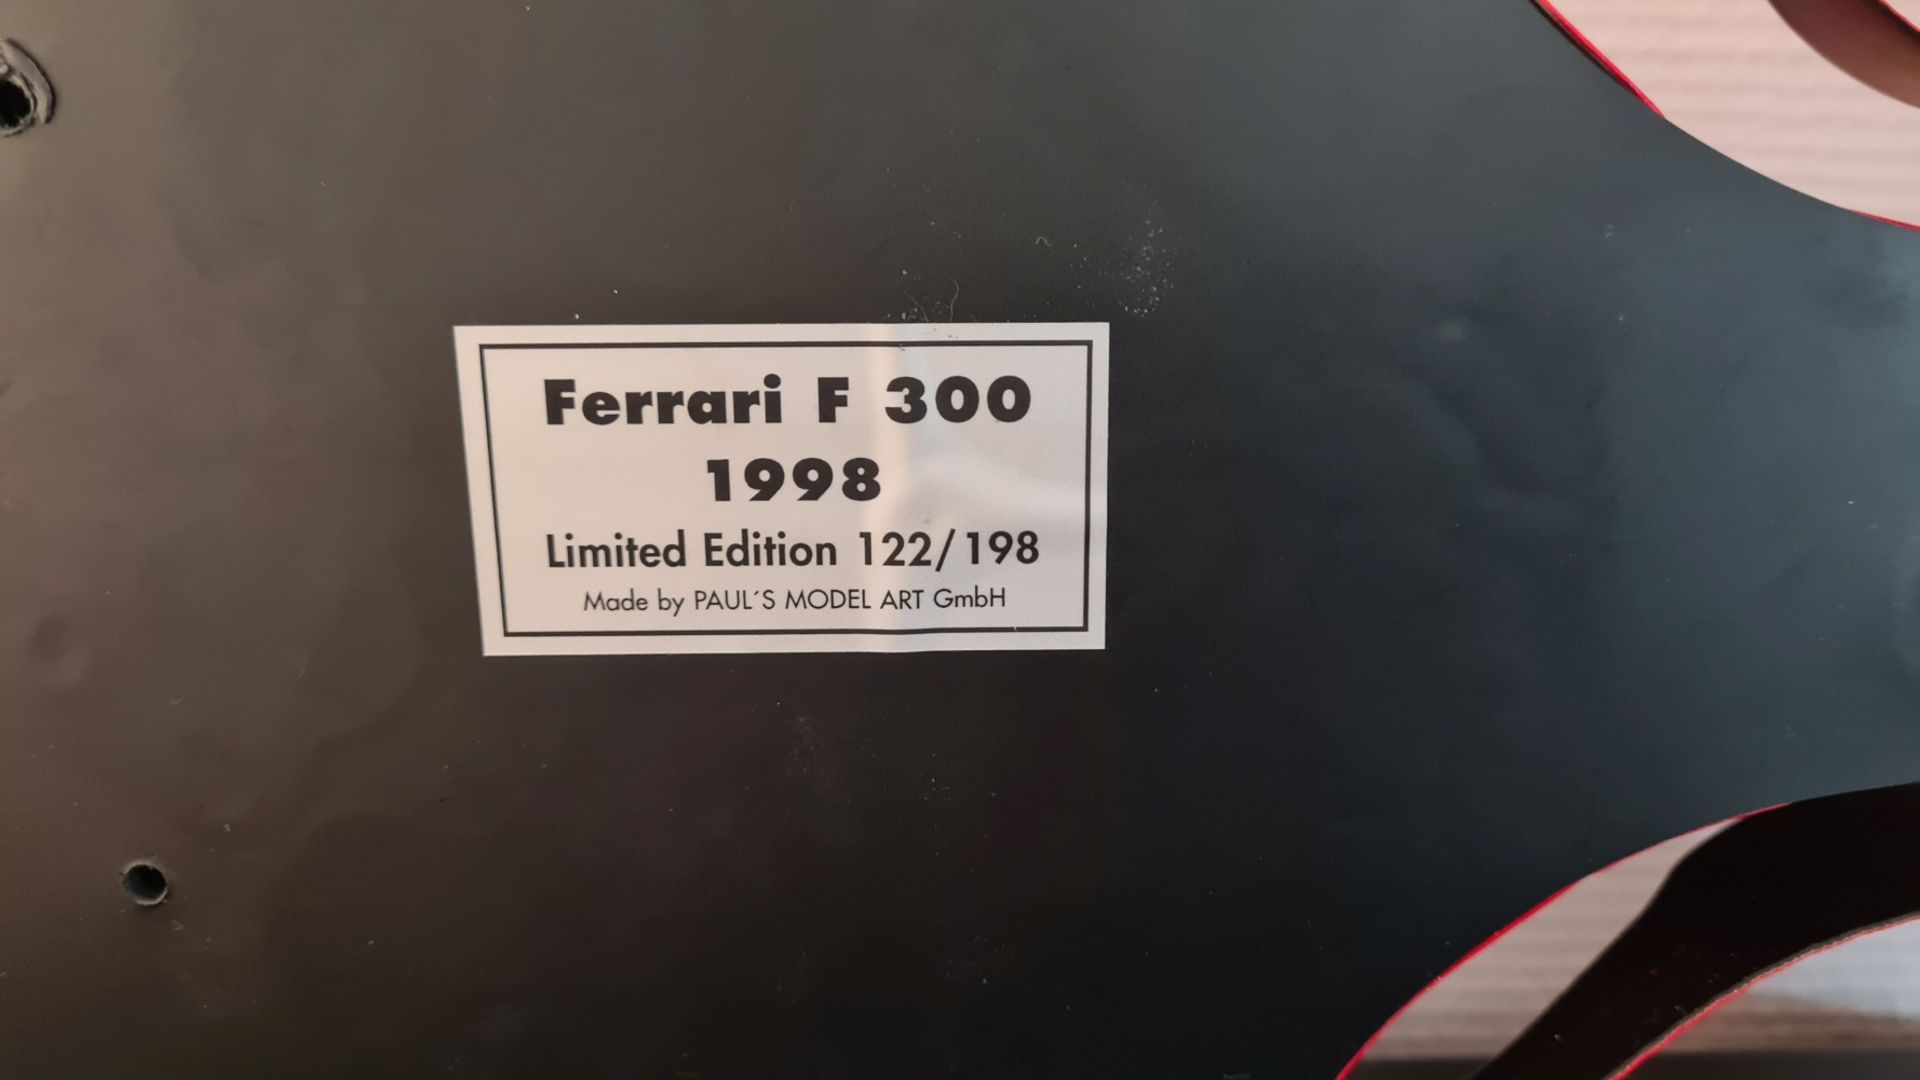 1998, FERRARI F 300 in the measuring stick 1: 8, driver Michael Schumacher, liftoff no. 3, limited e - Image 6 of 6